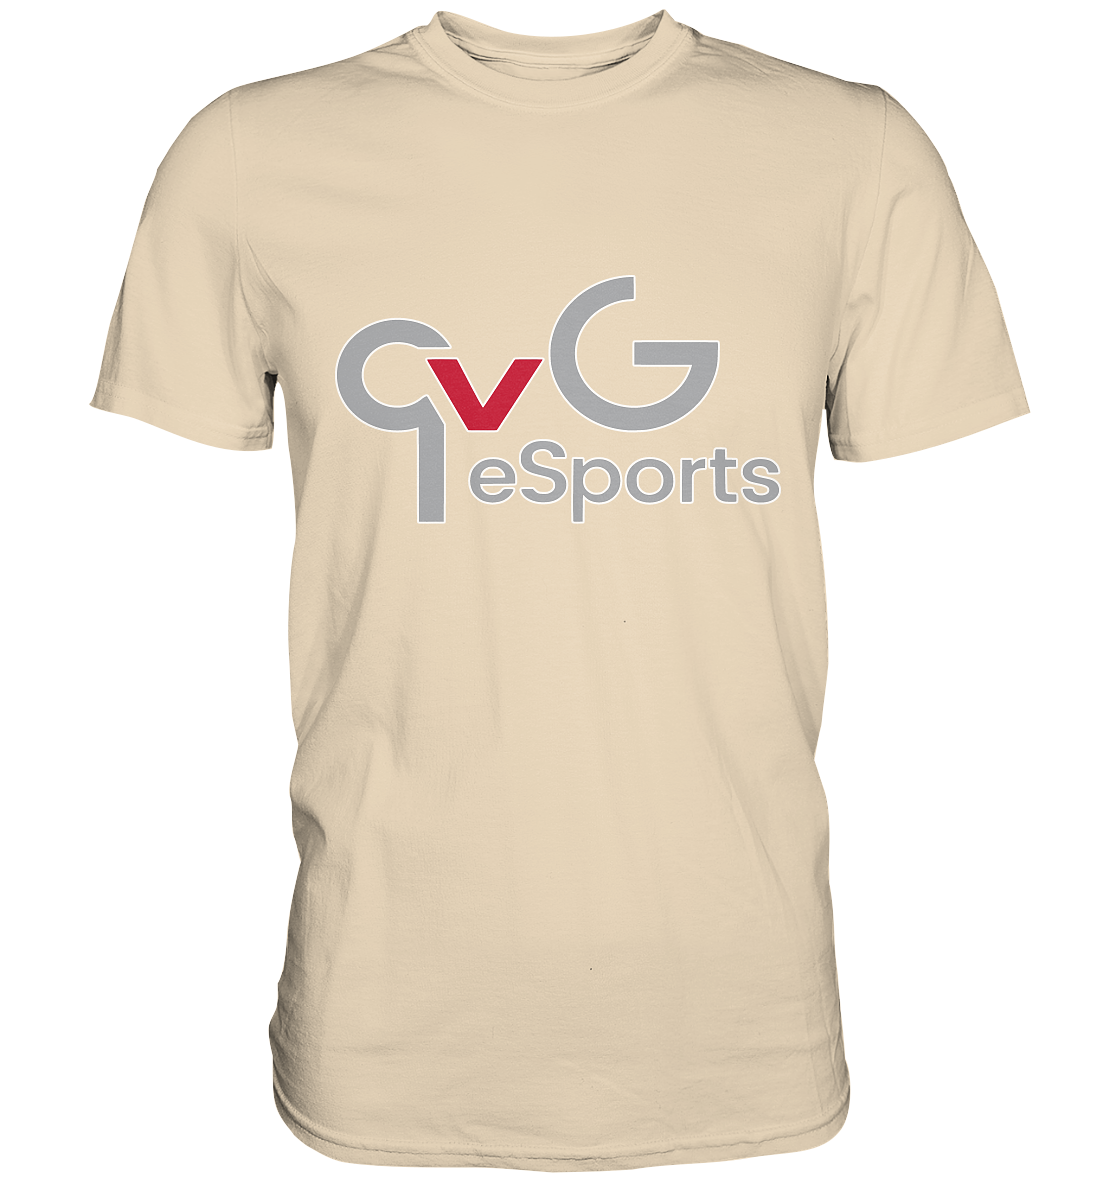 QVG ESPORTS - Basic Shirt